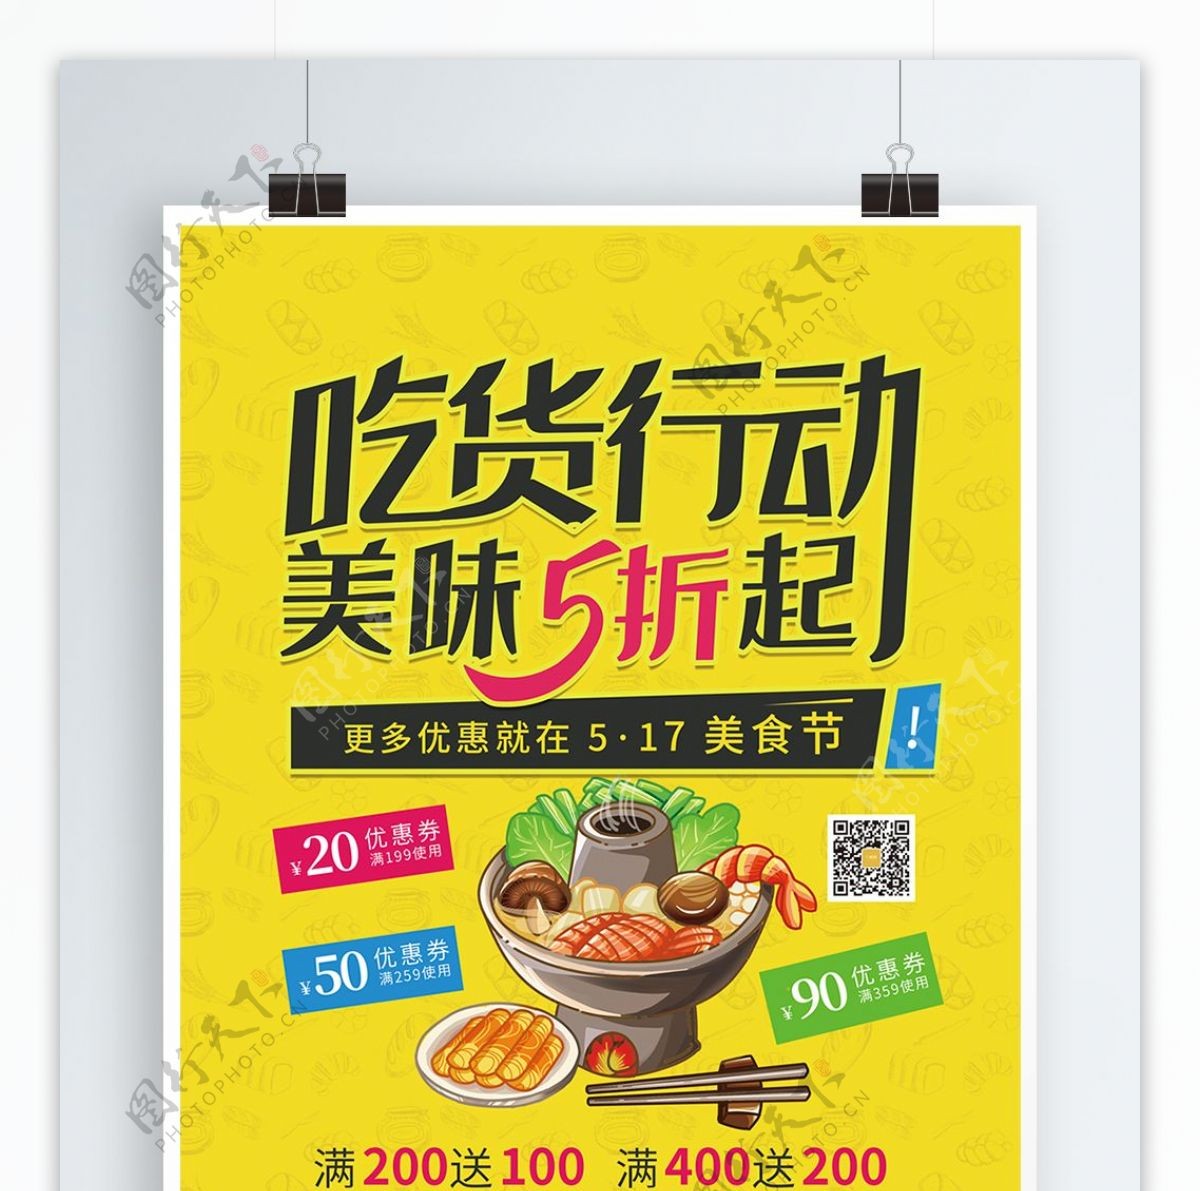 原创517吃货节吃货行动美食节促销海报